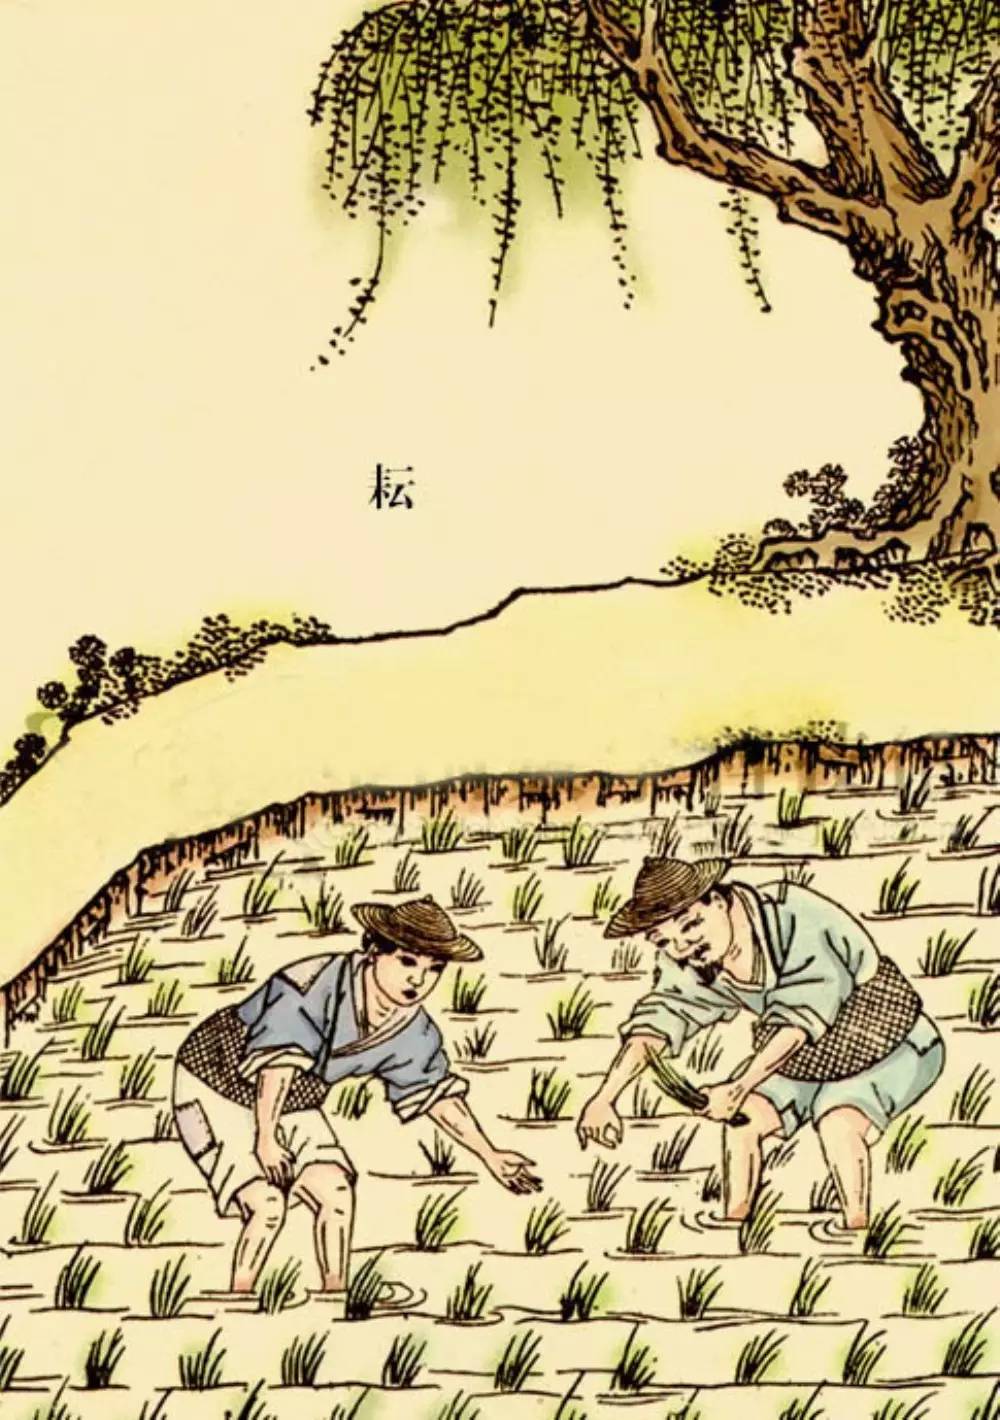 水稻插秧仍然是今天最主要的农耕生产活动民间收藏的秧马古代农书中